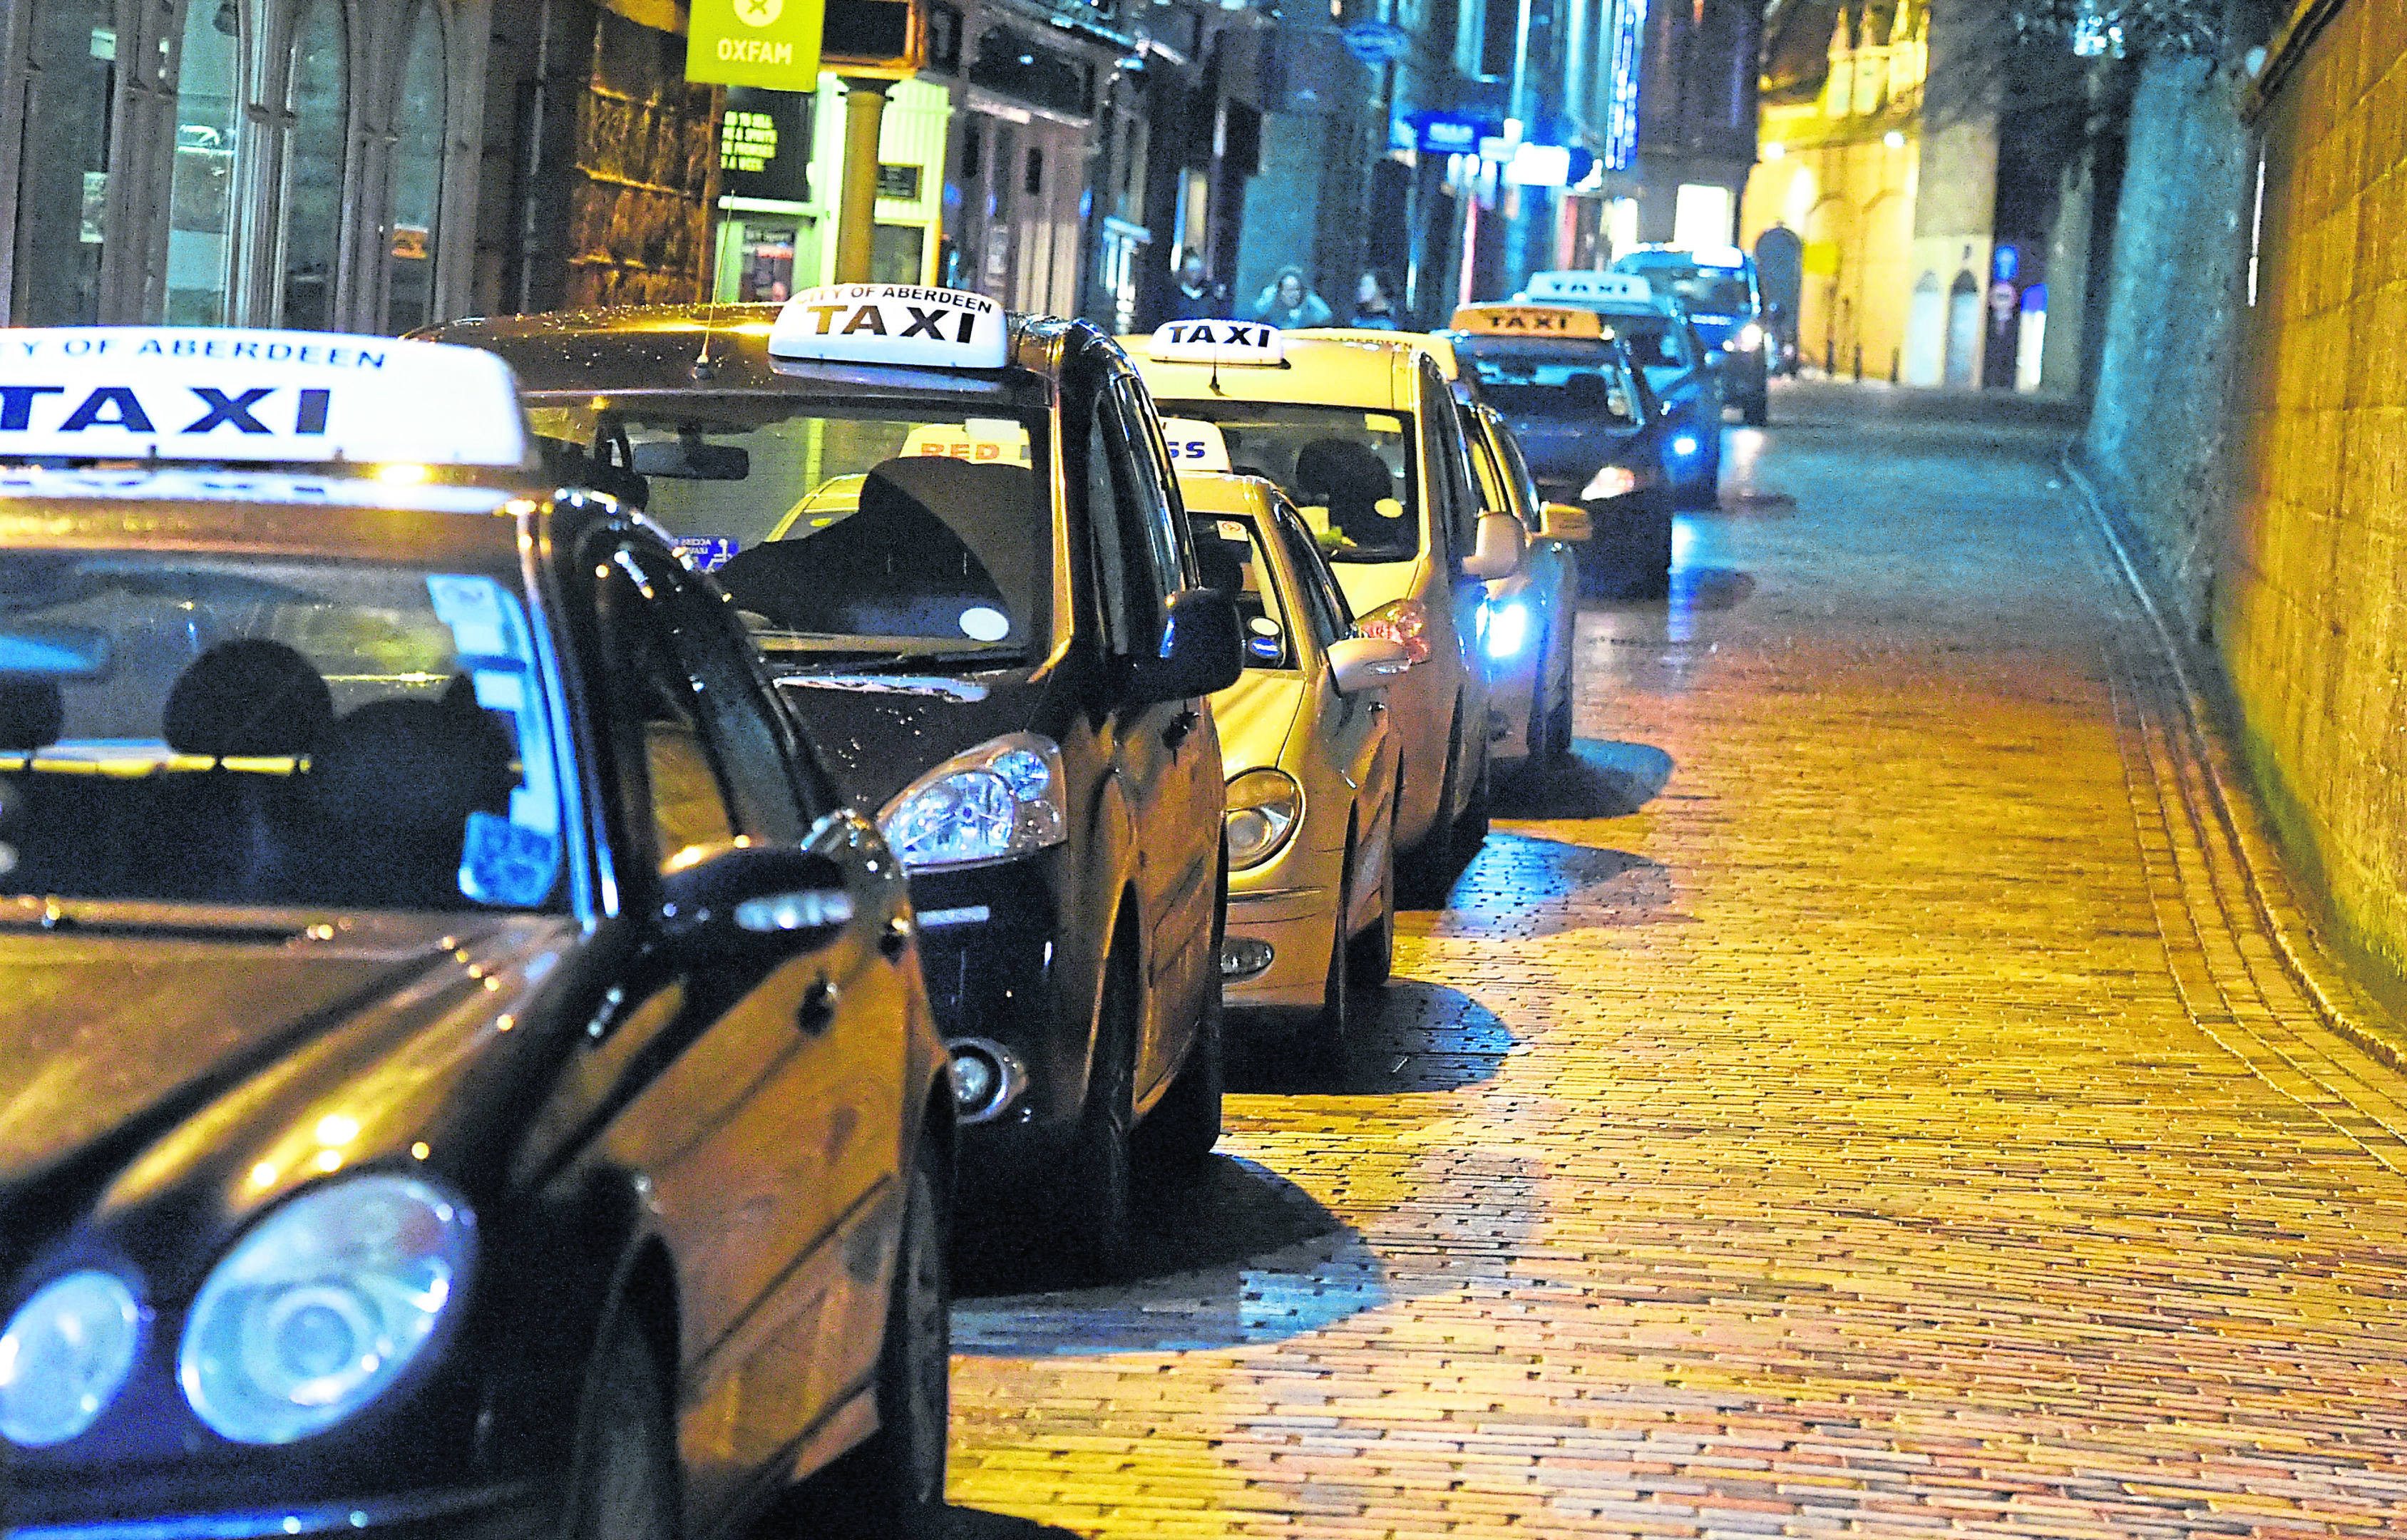 Taxi life a city driving моды. Такси в Шотландии. Taxi Rank.